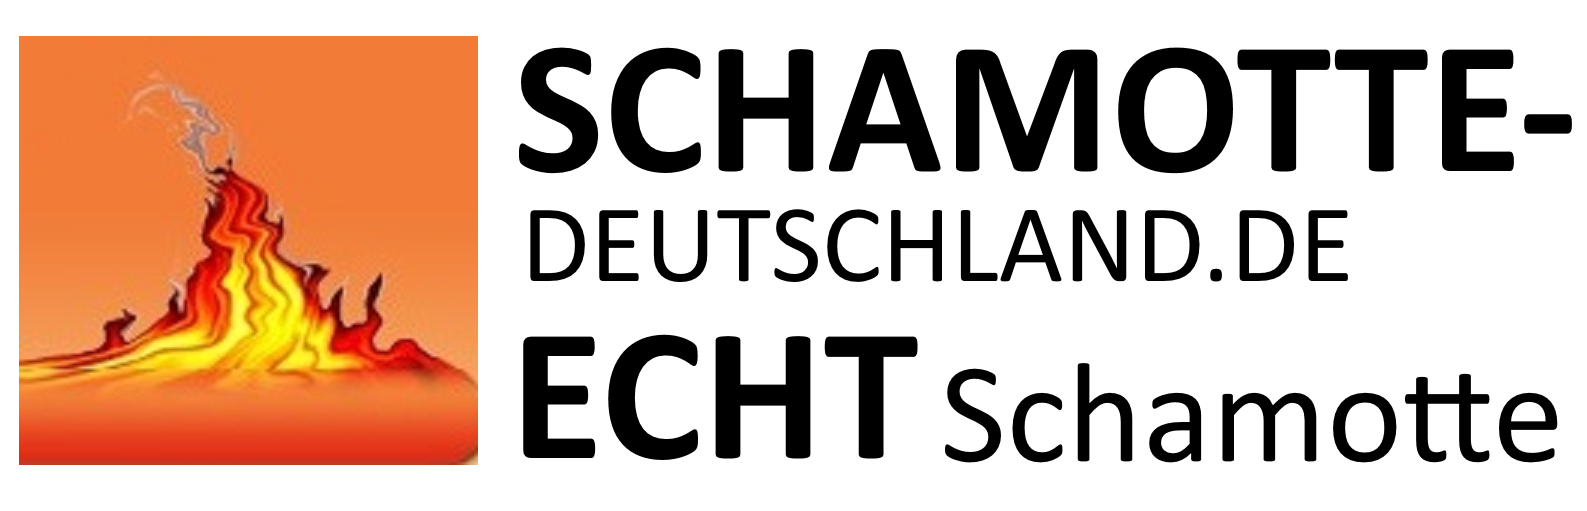 www.schamotte-deutschland.de - Ihr Feuerfest-Fachhändler